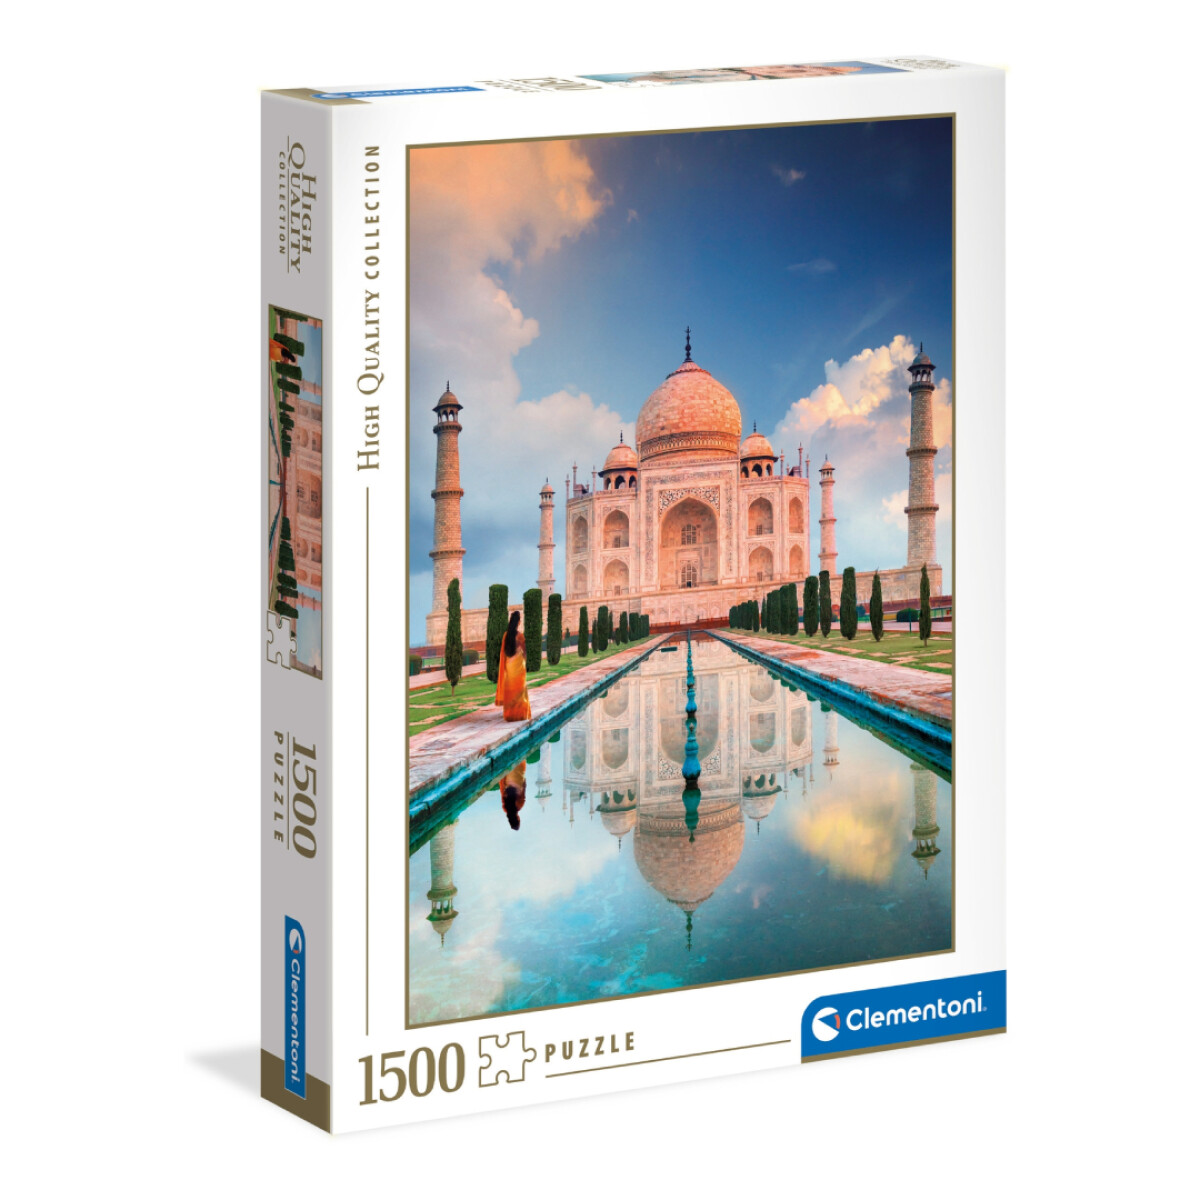 Puzzle Clementoni Taj Mahal 1500 Piezas - 001 